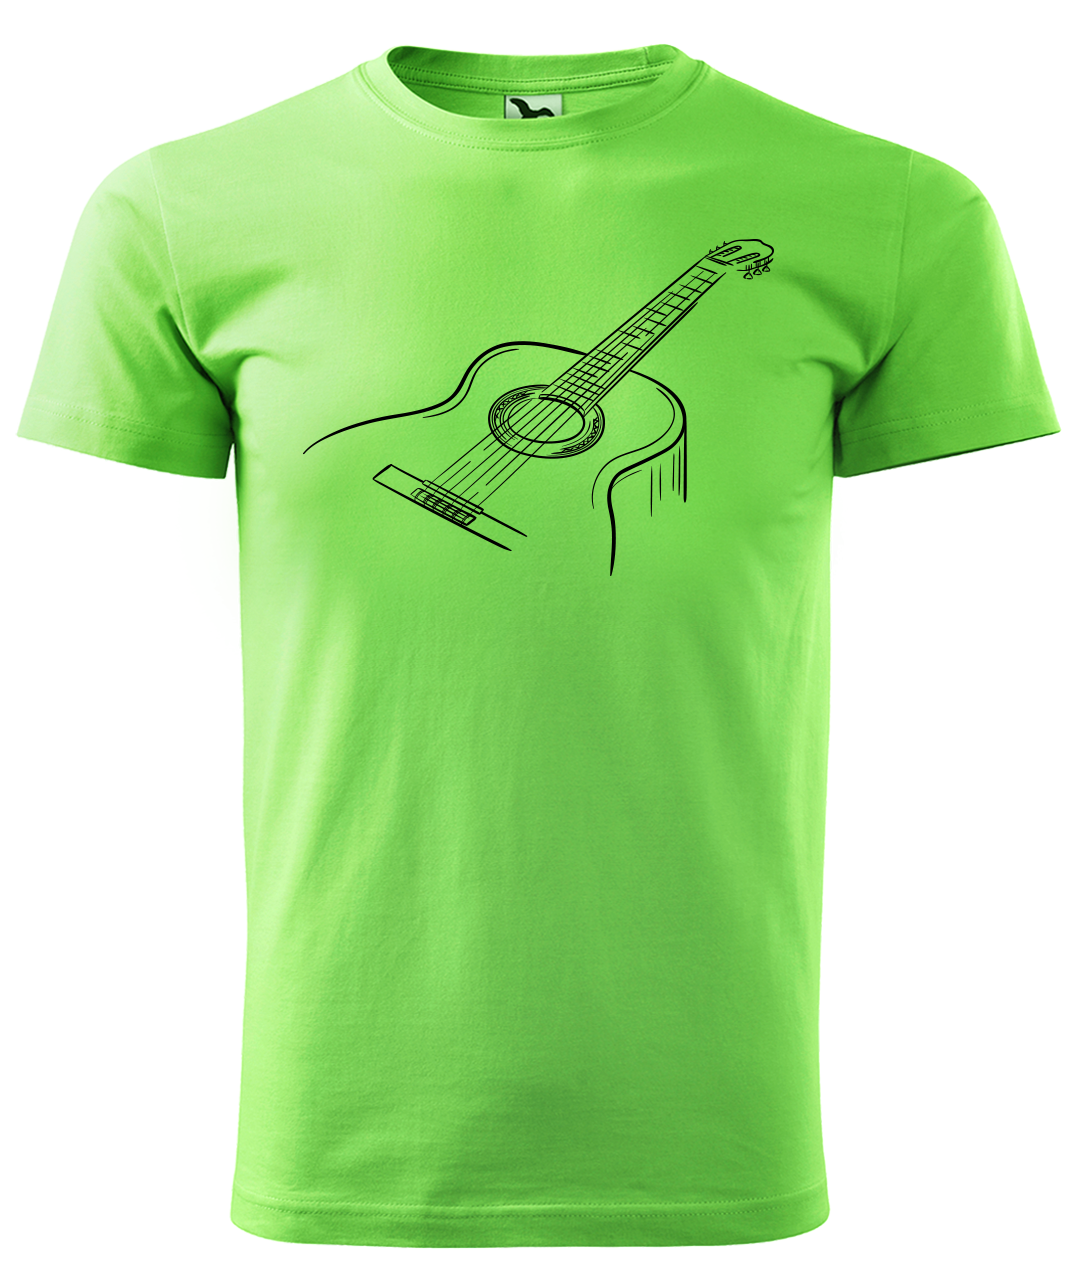 Dětské tričko s kytarou - Klasická kytara Velikost: 4 roky / 110 cm, Barva: Apple Green (92)